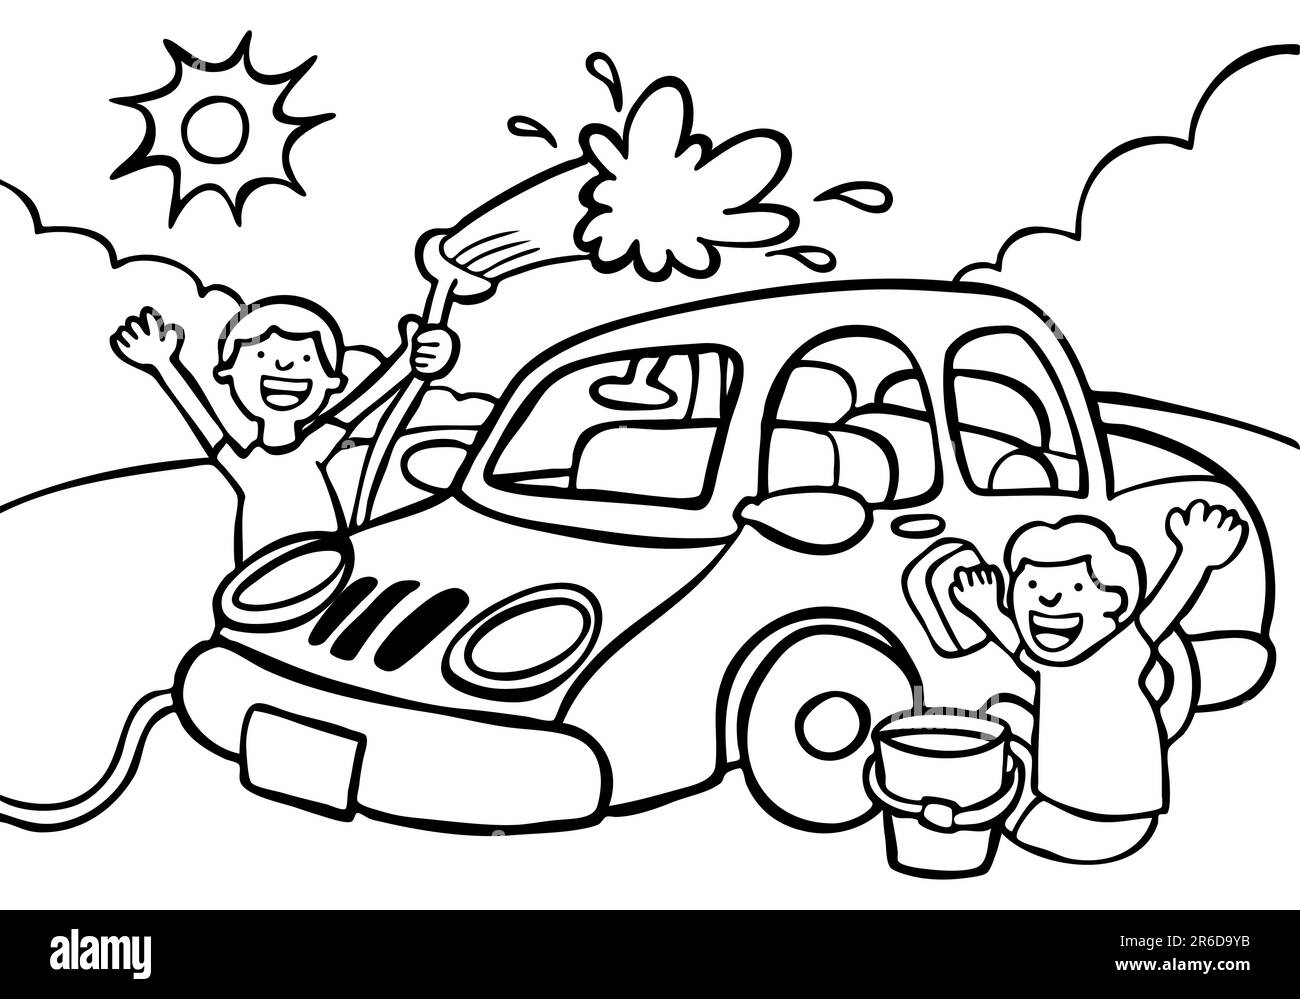 Cartoon image of two kids washing a car - black / white version Stock ...